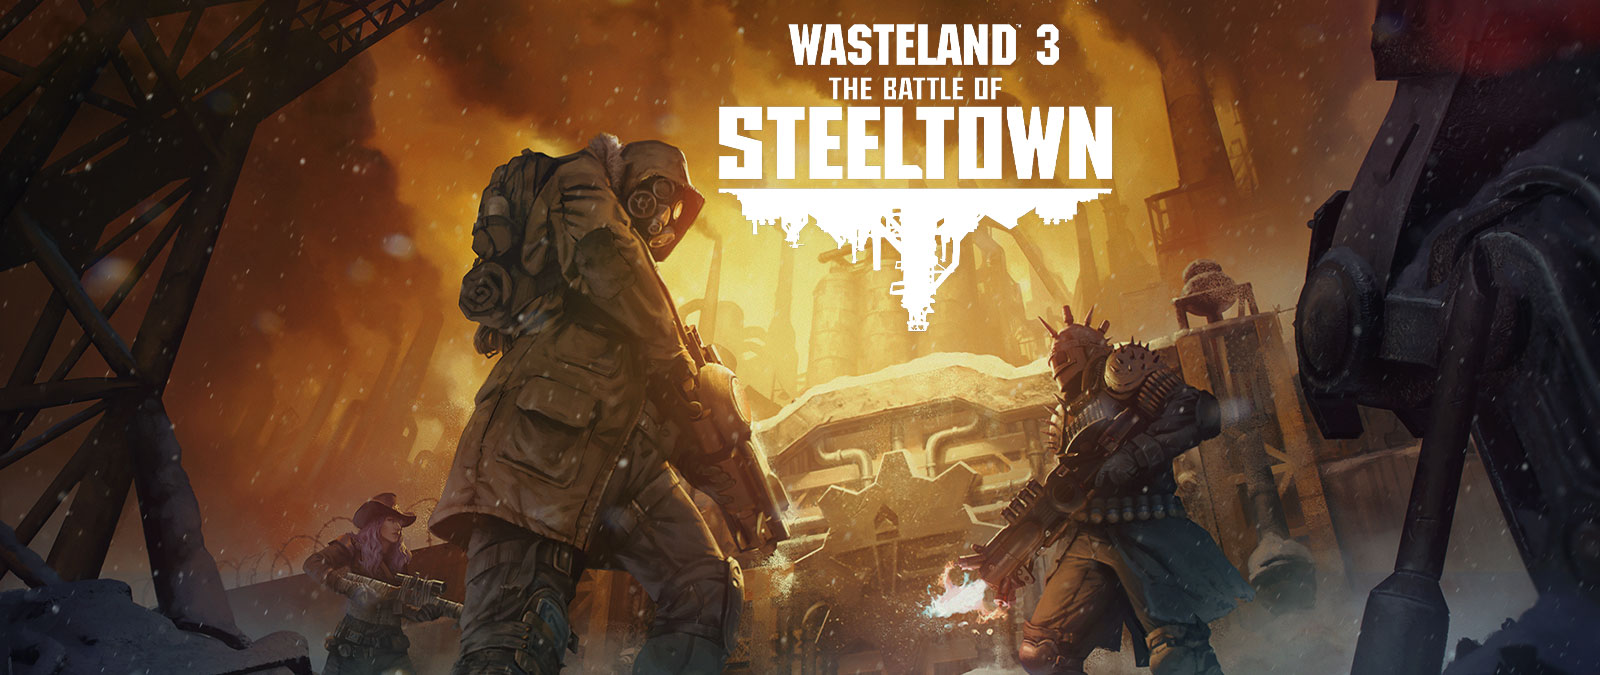 Wasteland 3: The Battle of Steeltown. Три персонажа с оружием и в доспехах перед дверью на фоне индустриального пейзажа